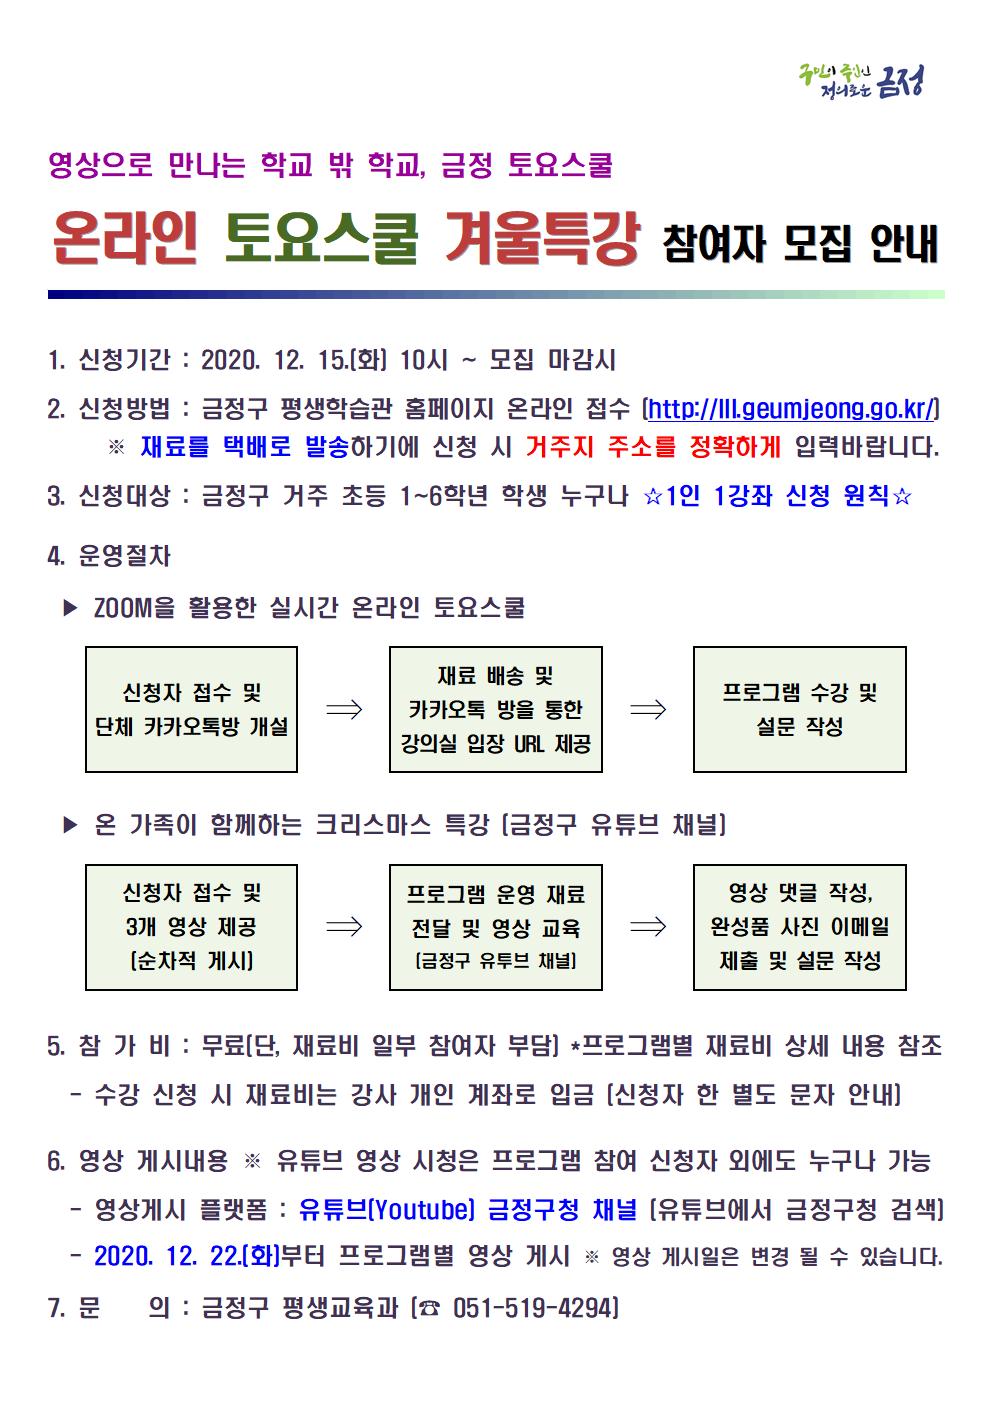 2020. 금정 온라인 토요스쿨 겨울특강 참여자 모집 안내